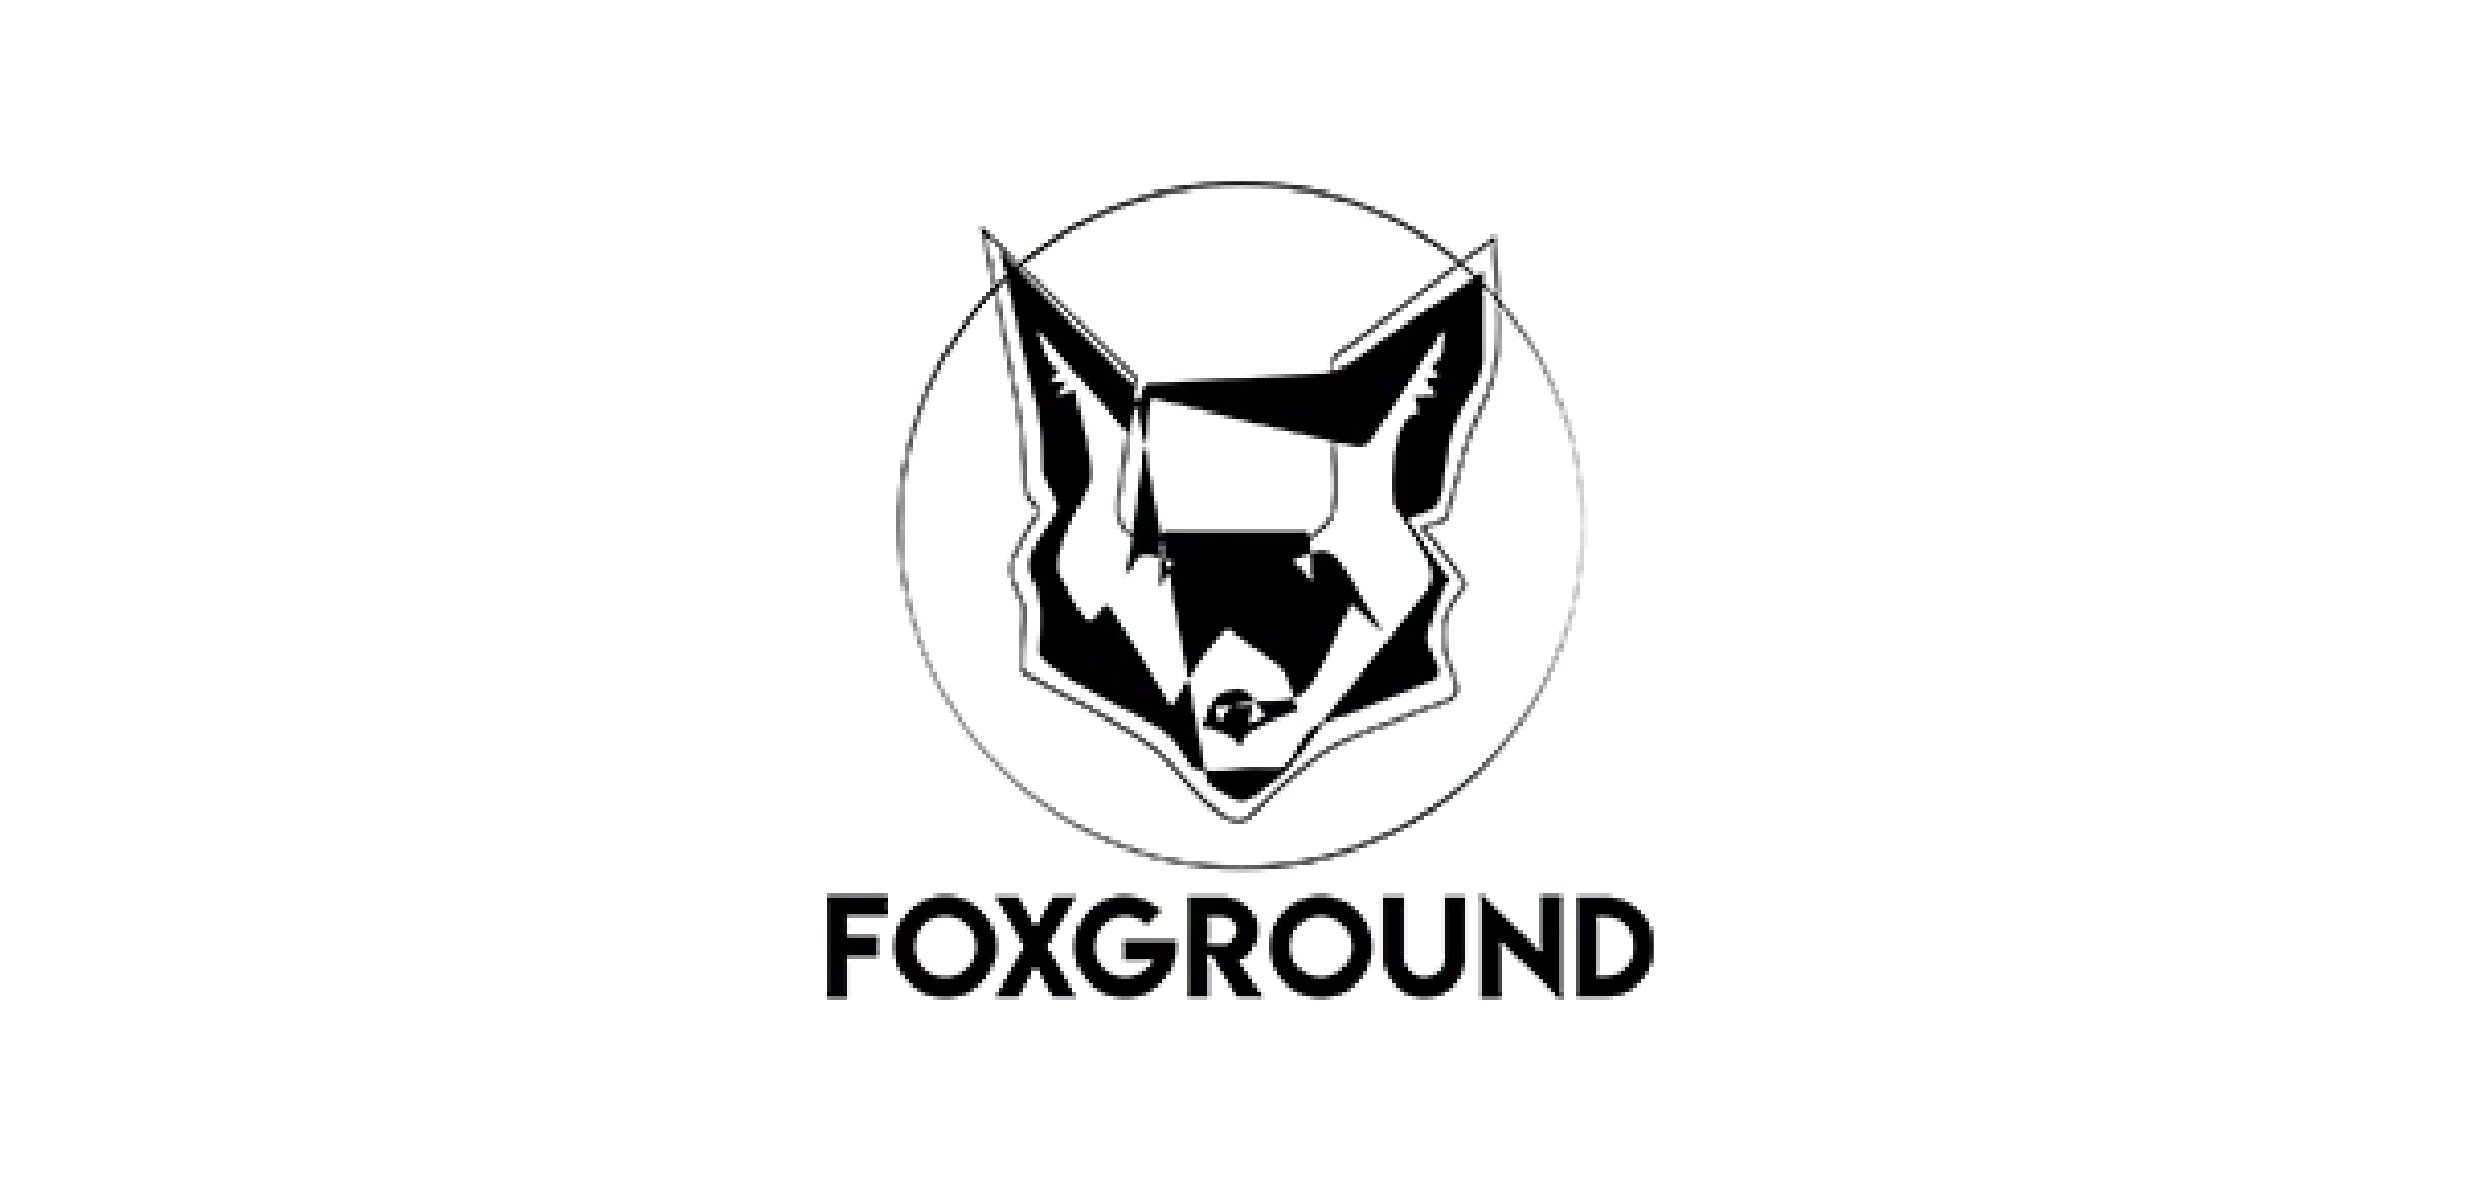 FOXGROUND - Außendarstellung, Corporate Identity, Webdesign und Shop